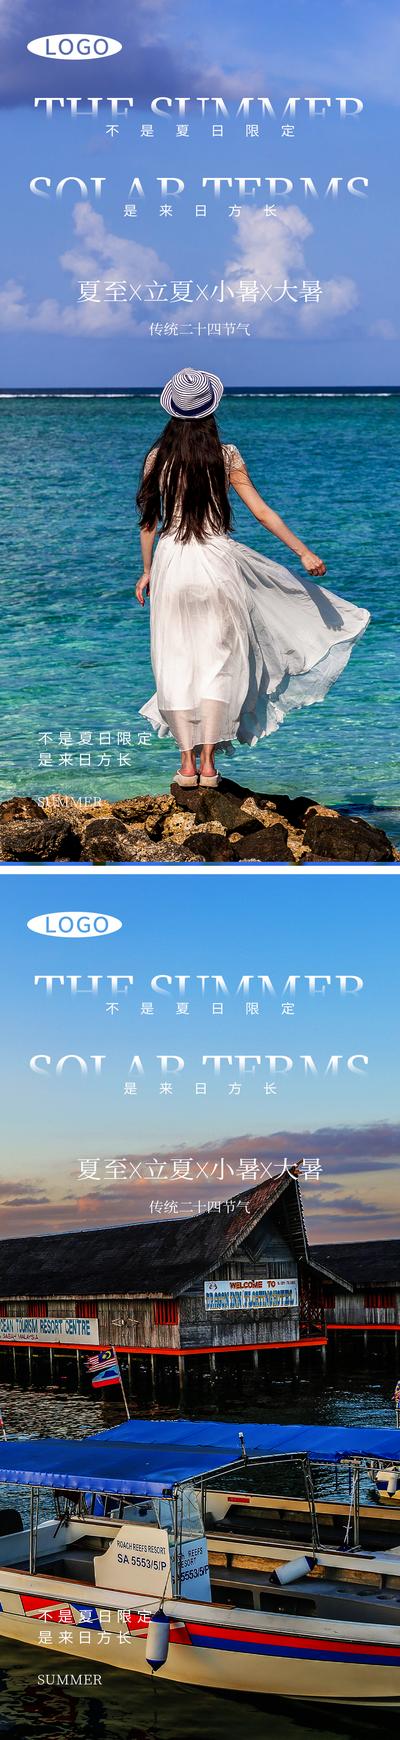 南门网 广告 海报 节气 夏至 系列 风景